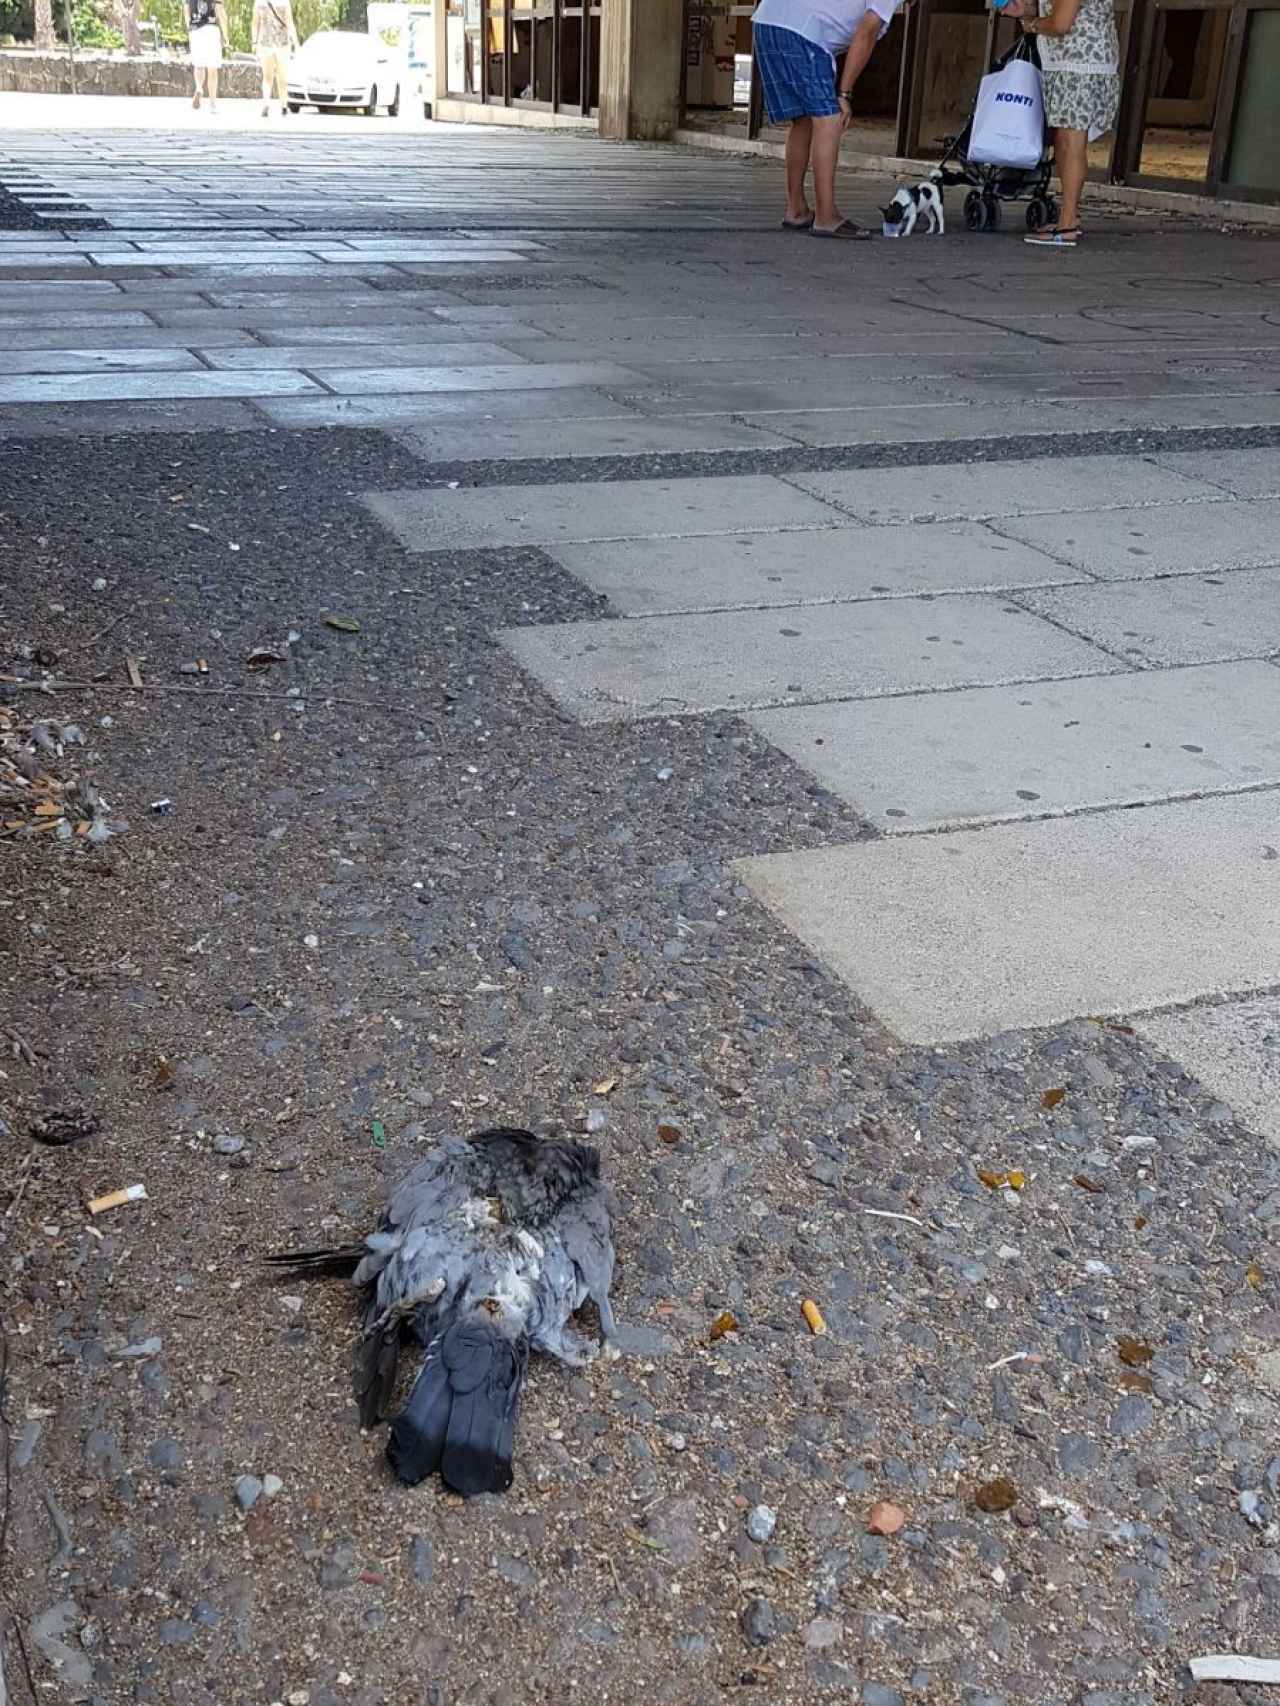 Las palomas muertas forman parte del paisaje urbano habitual de Ten-Bel